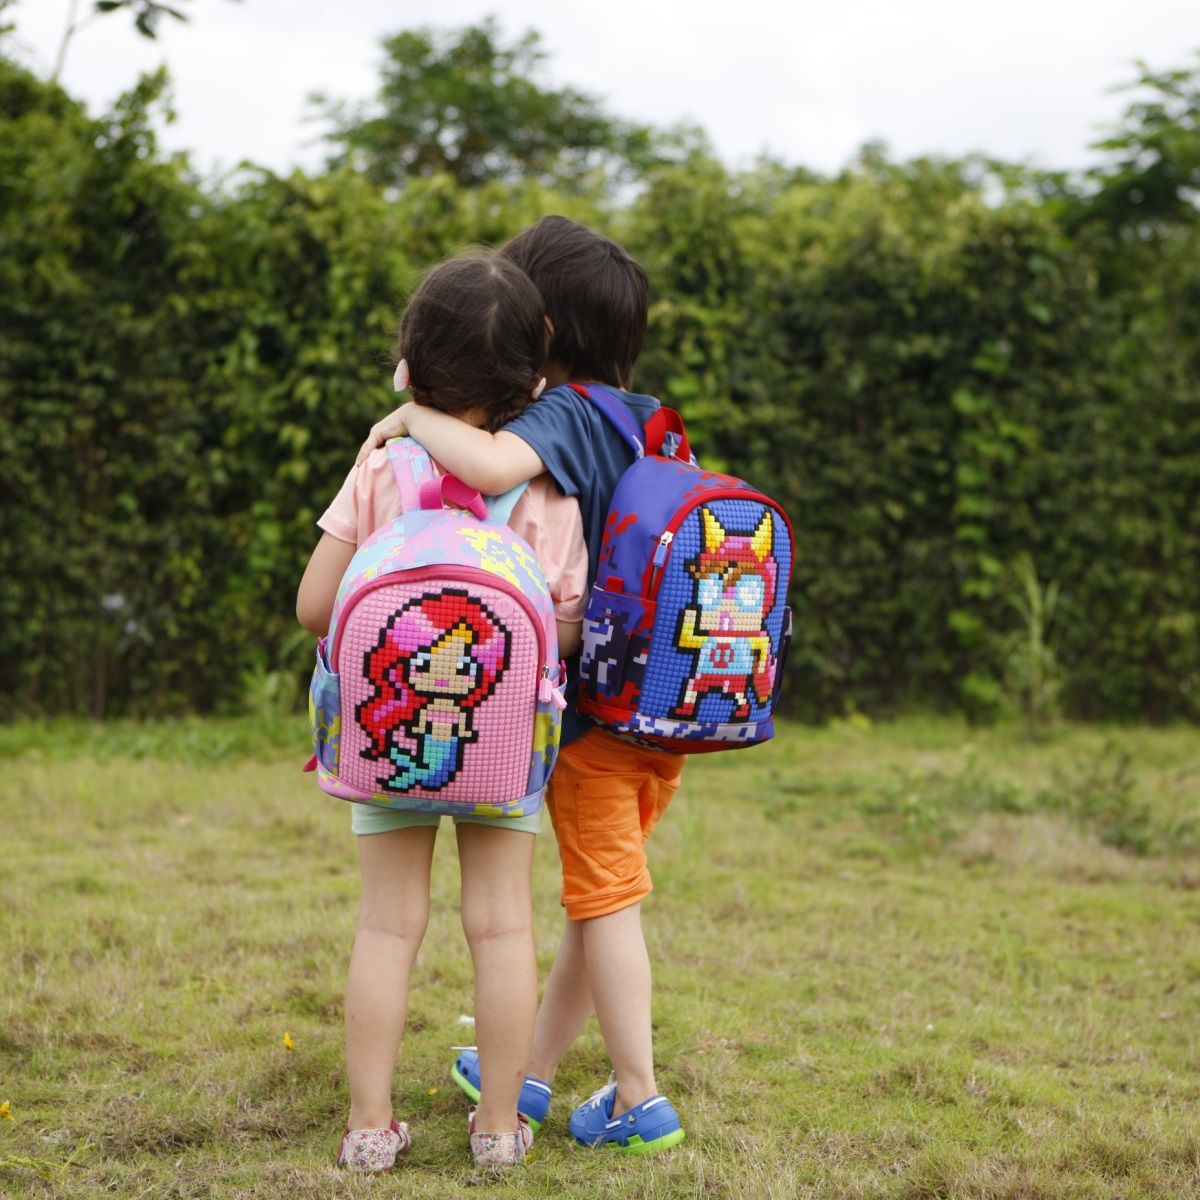 UPixel Pixel Upgraded Kids Backpack  - Pink